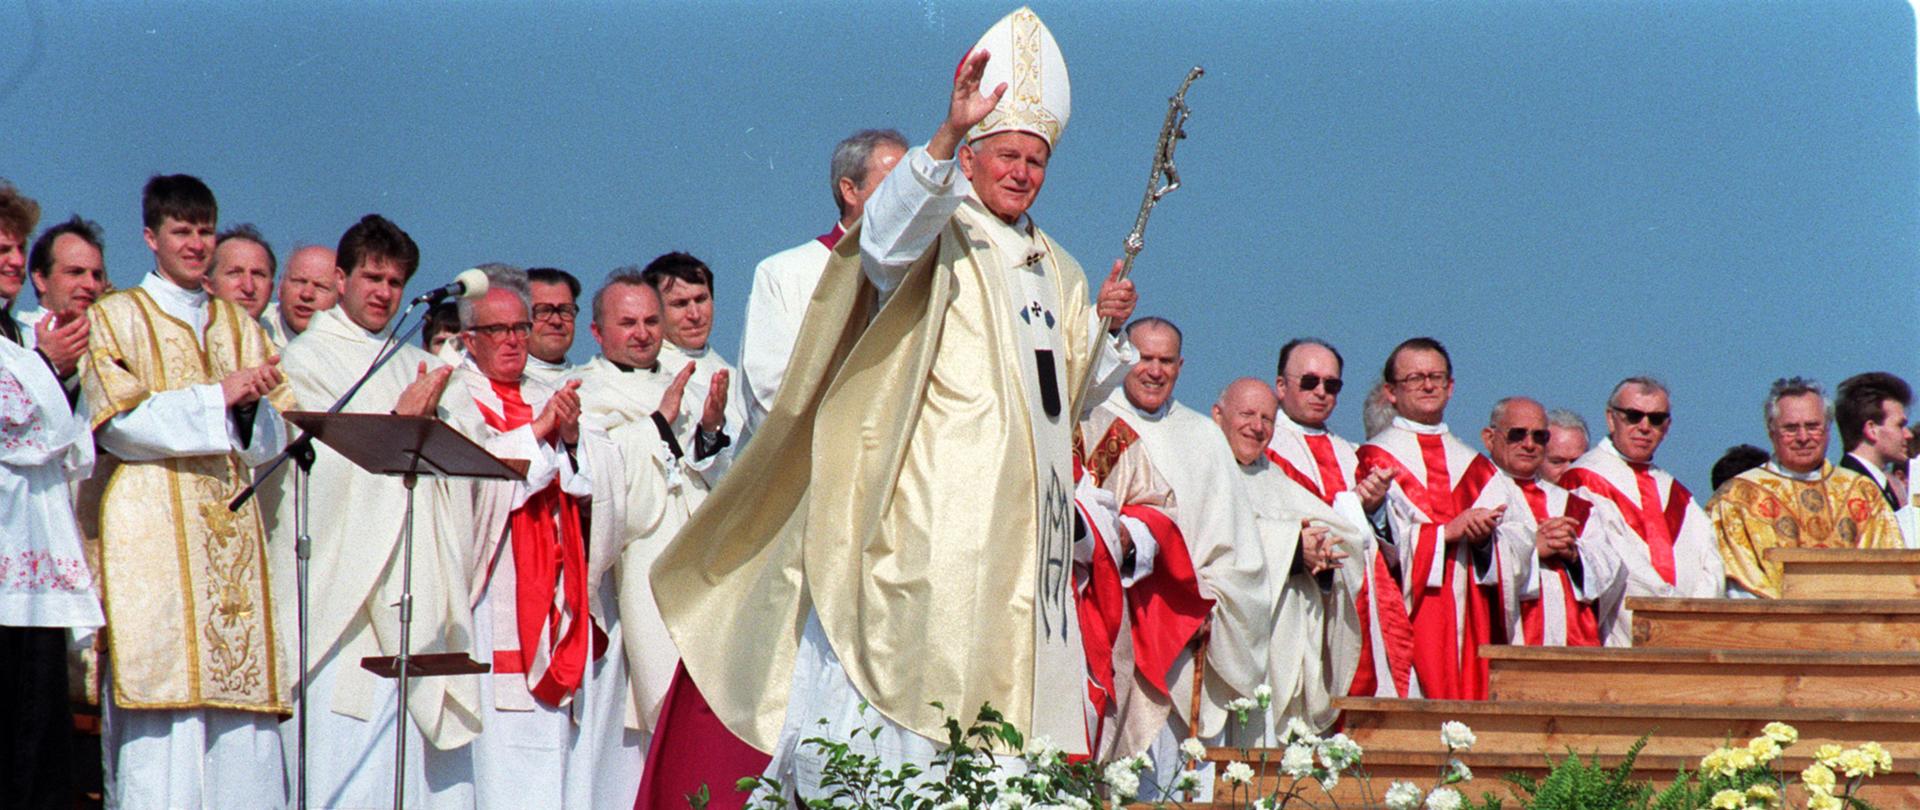 fot. Wojciech Stan/PAP. Wizyta Jana Pawła II w Polsce - Lubaczów 1991 r. 